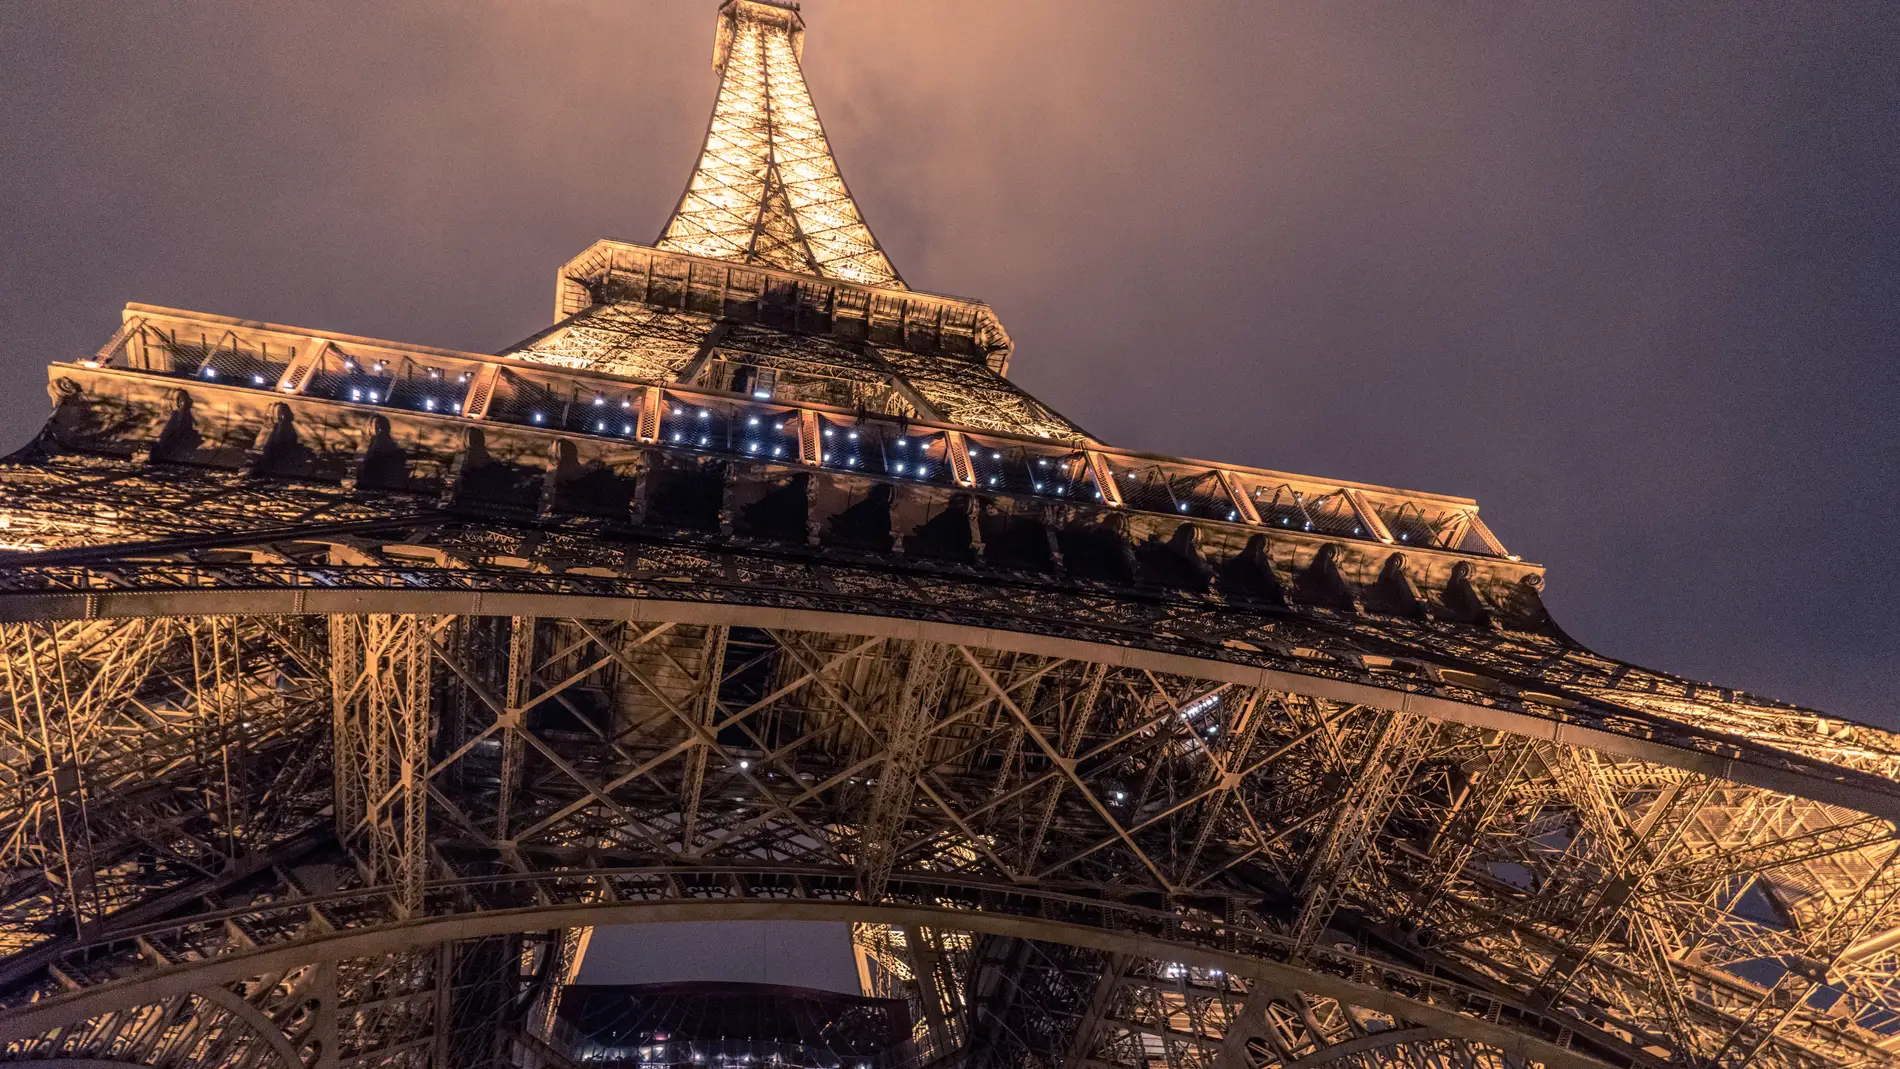 Imagen de archivo de la Torre Eiffel iluminada, tomada desde el pie del monumento. / Unsplash